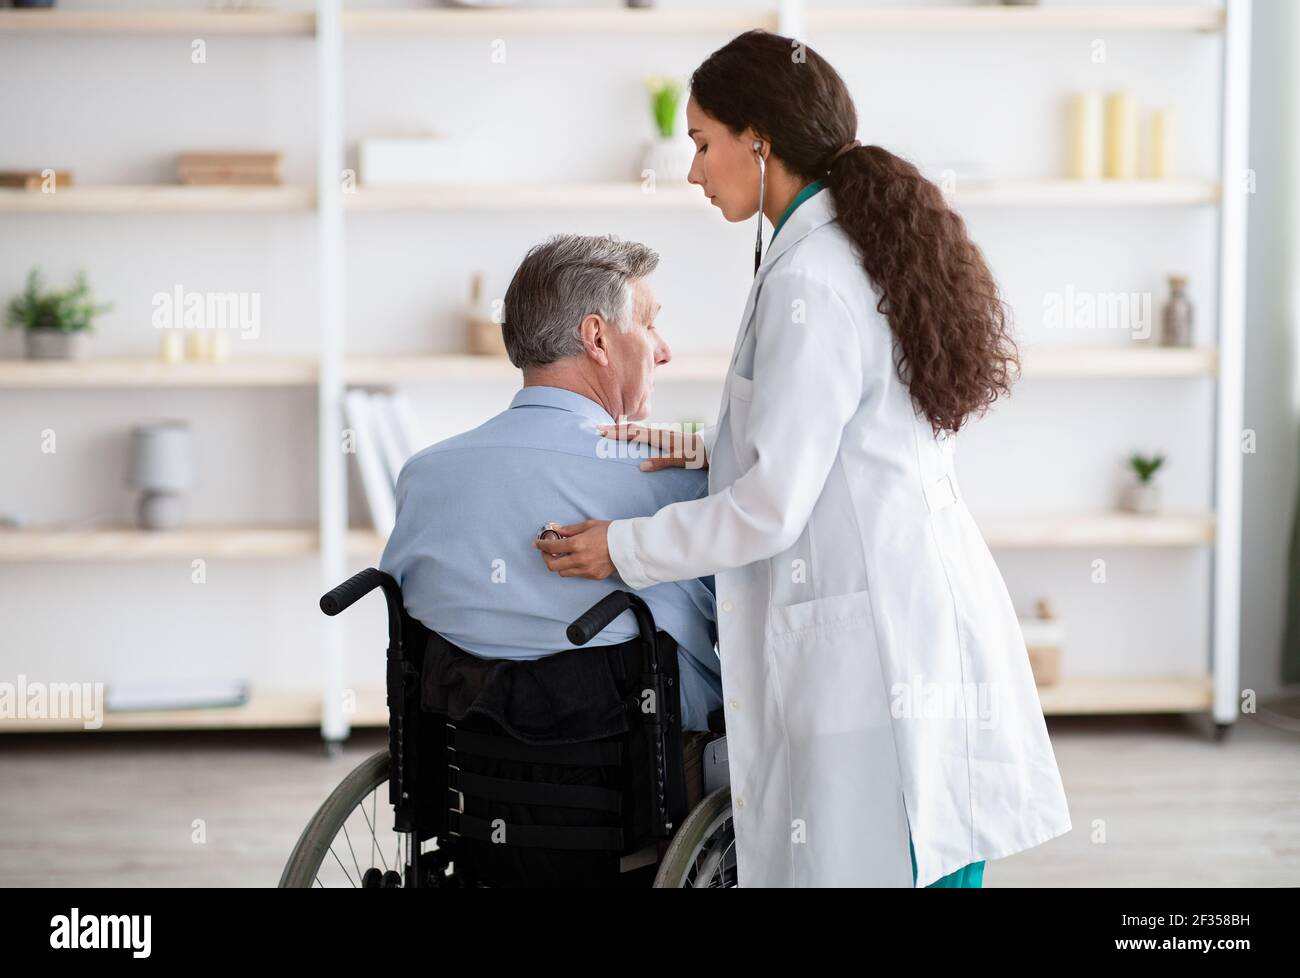 Ältere Patienten mit körperlicher Behinderung erhalten medizinische Hilfe von jungen Menschen Arzt während der covid Epidemie Stockfoto